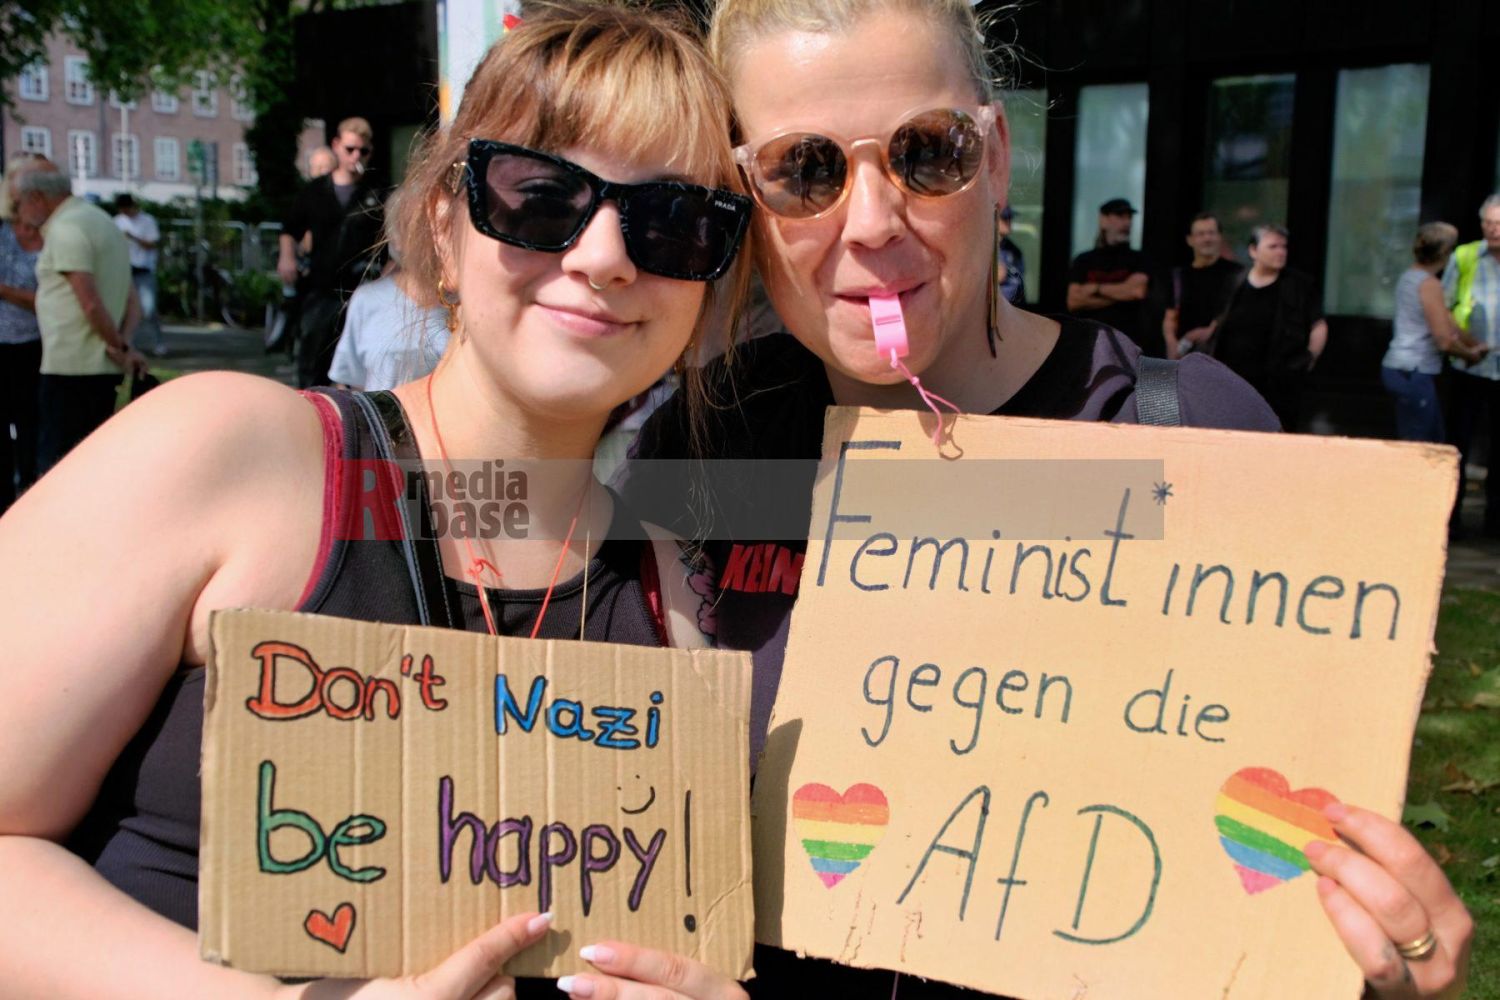 Protest gegen den AfD Parteitag in Essen <i>Bild Bitzel/R-mediabase</i> <br><a href=/confor2/?bld=82762&pst=82745&aid=70&dc=0943&i1=Bitzel/R-mediabase><strong>Downloadanfrage</strong></a>  